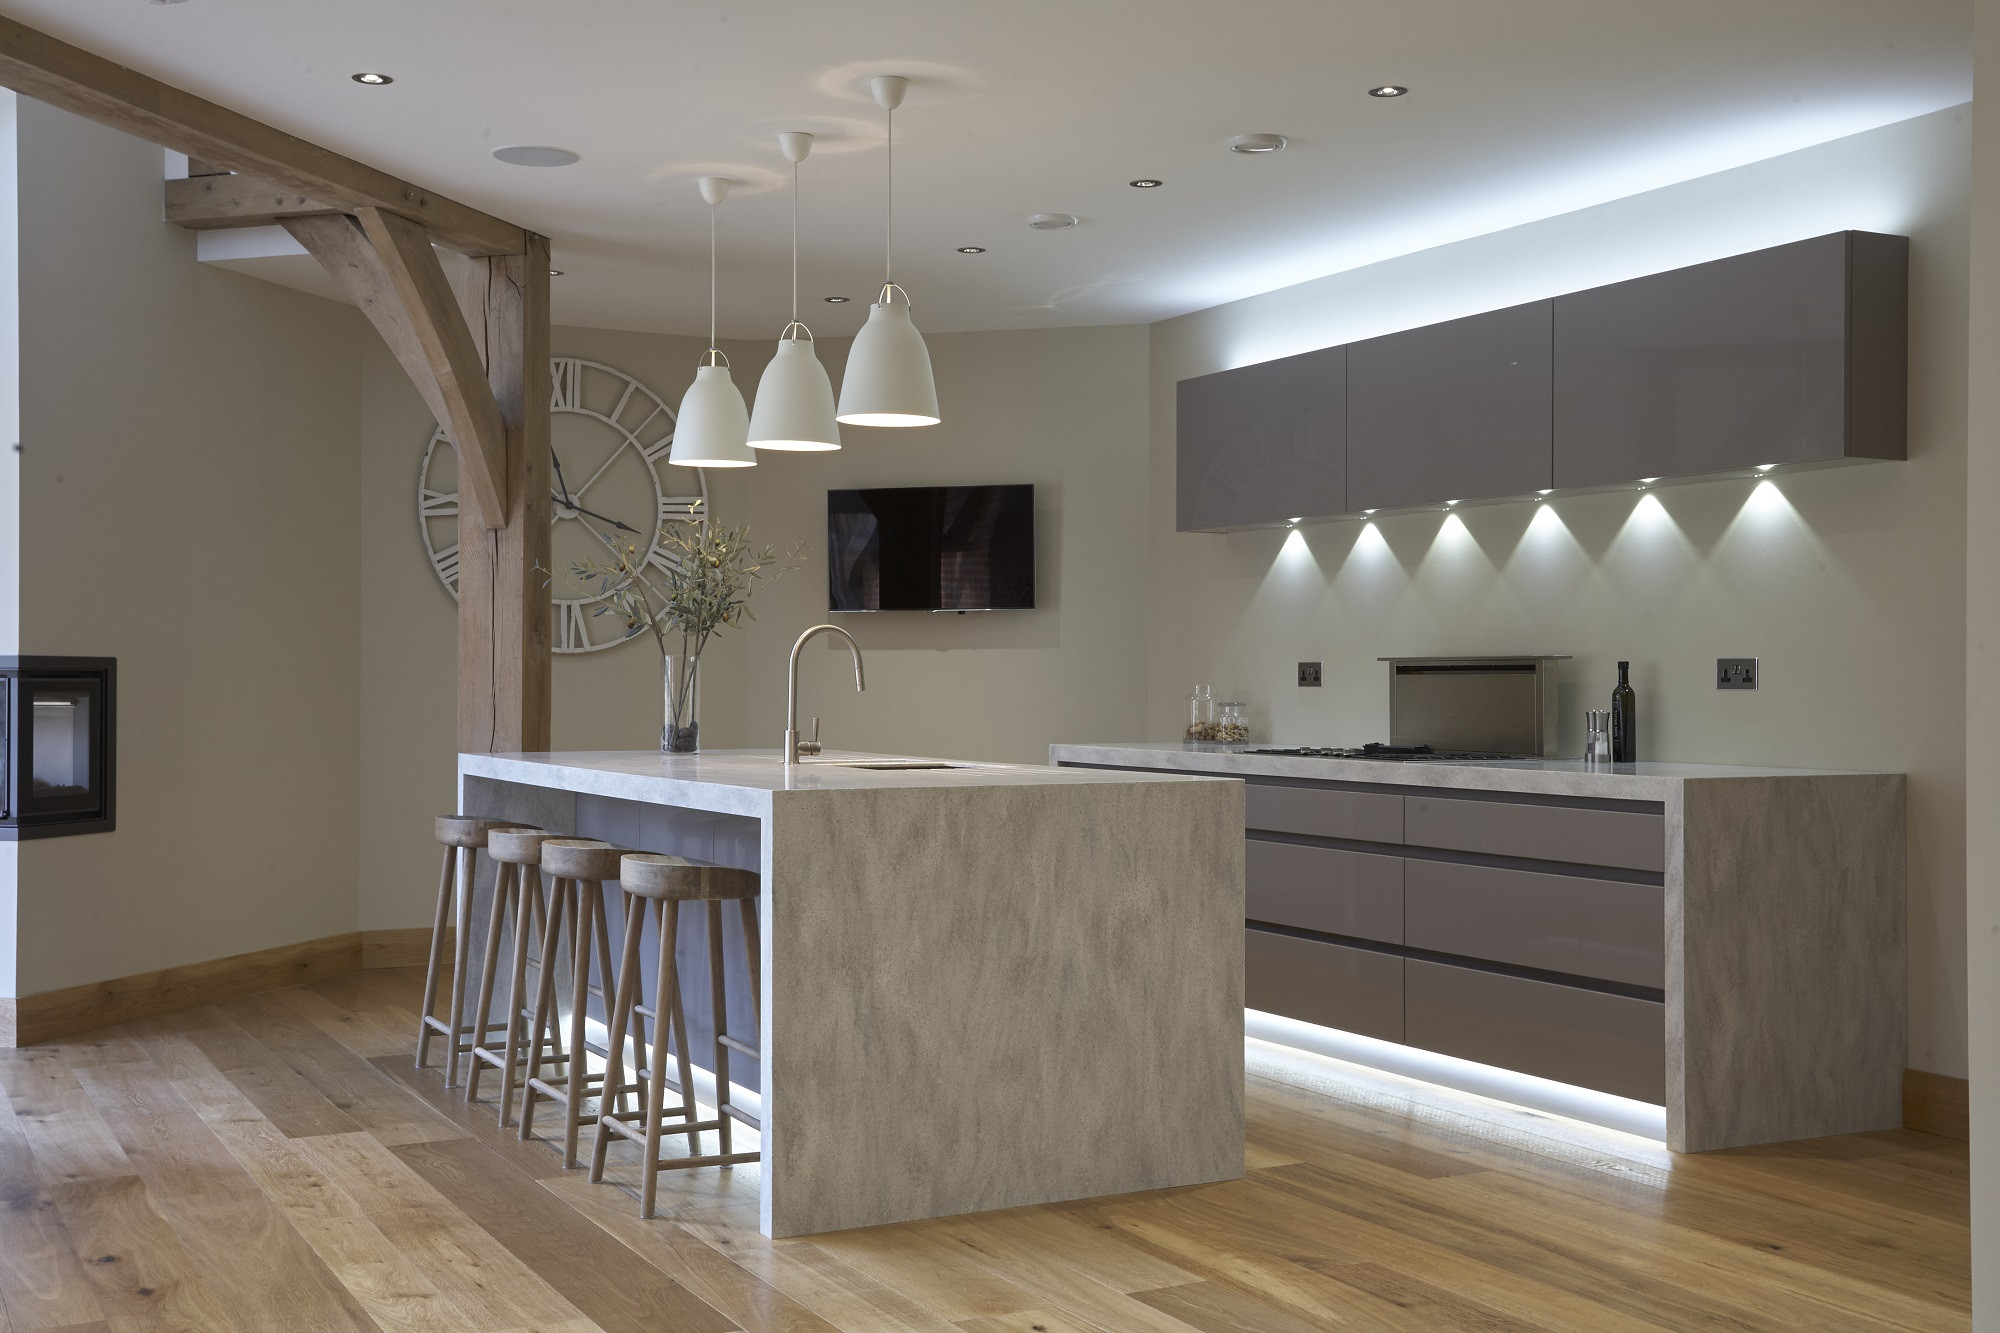 Kitchen Cabinets Lighting Ideas
 13 Lustrous Kitchen Lighting Ideas to Illuminate Your Home